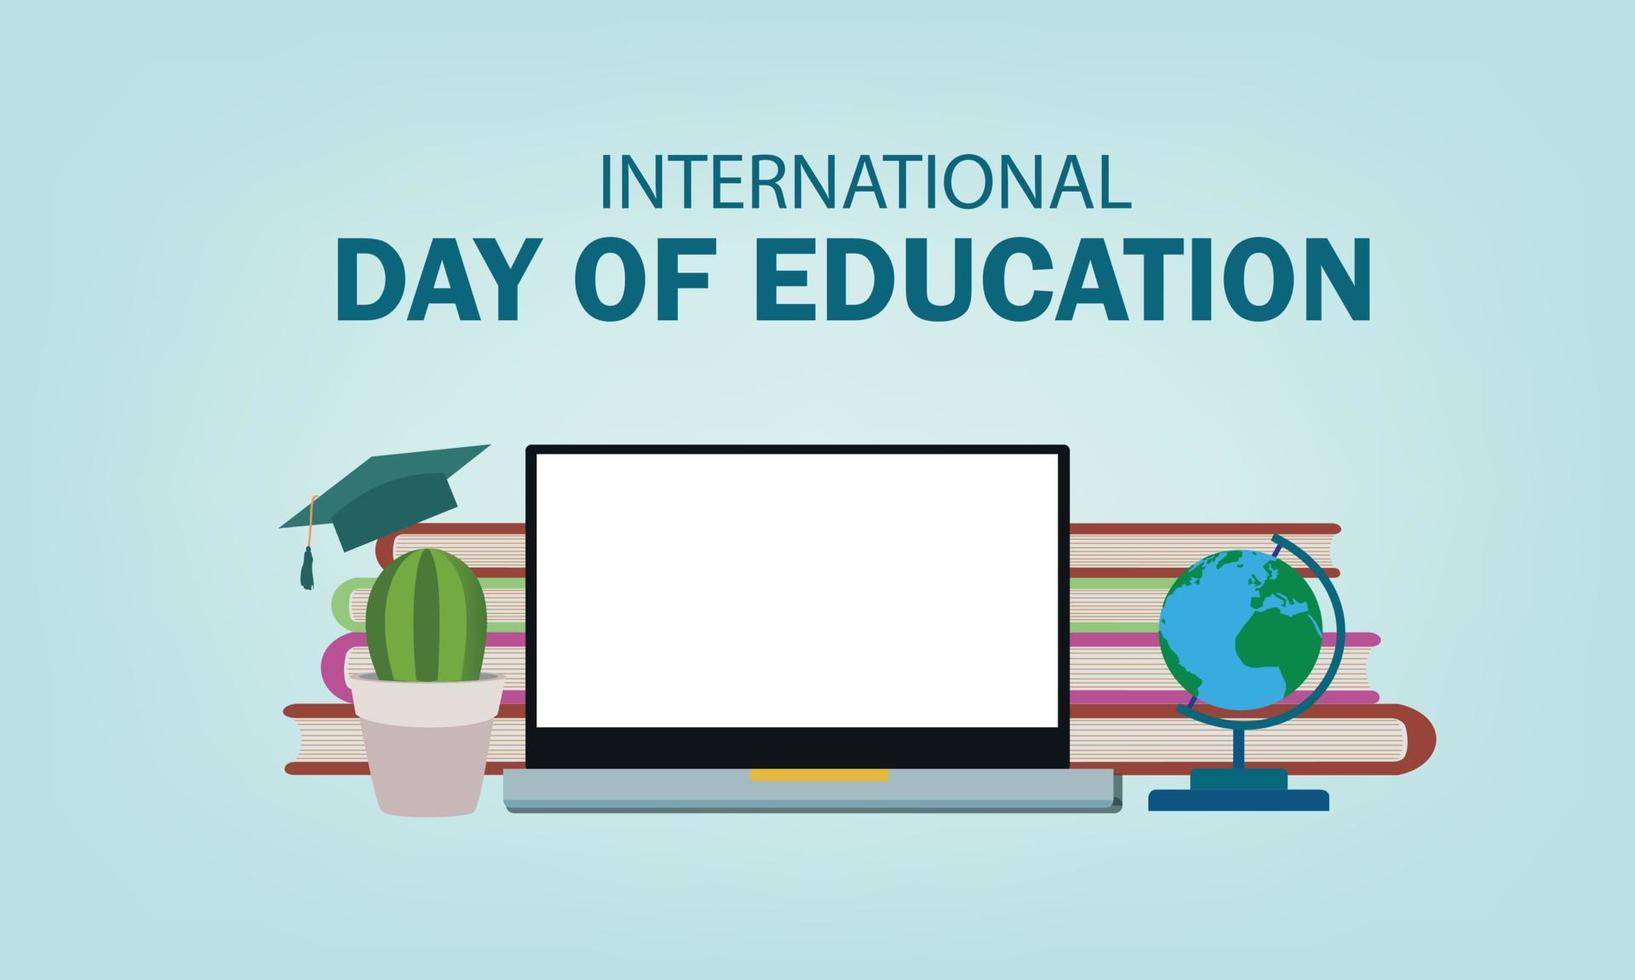 illustration vectorielle de la journée internationale de l'éducation. conception simple et élégante vecteur